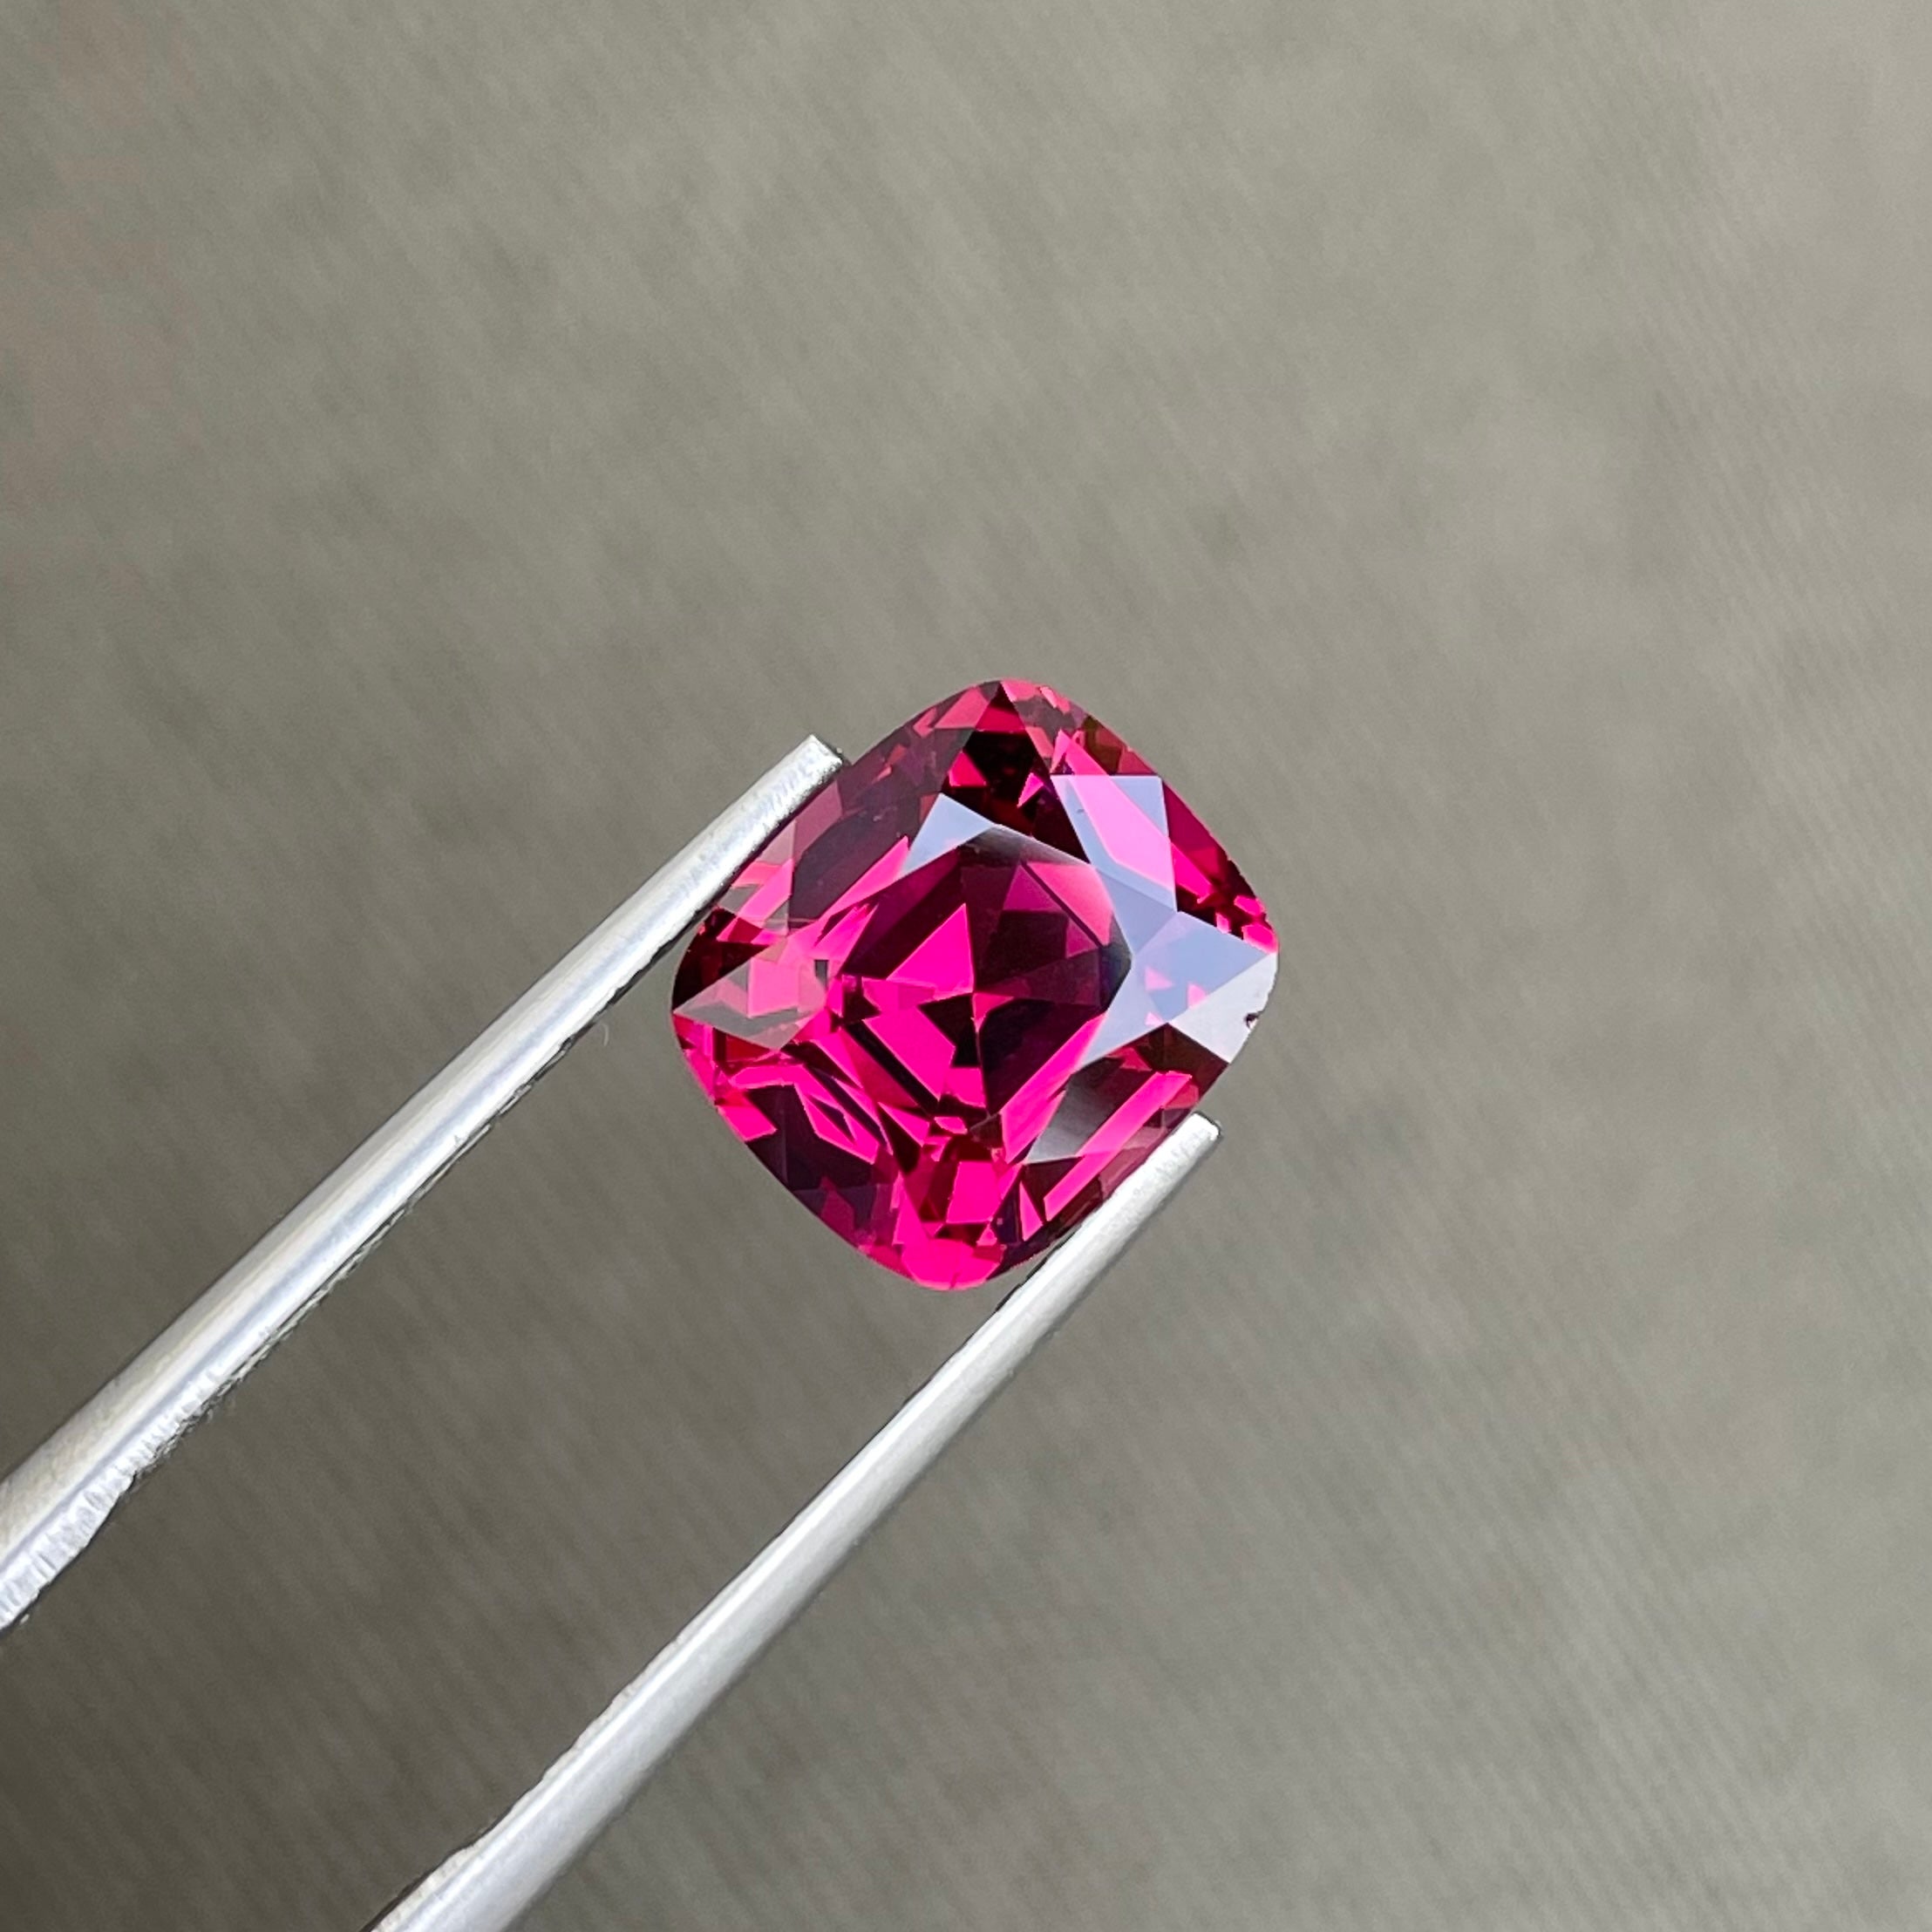 Purchase Reddish Pink Garnet 3.65 carats Cushion Cut Natural Tanzanian Gemstone